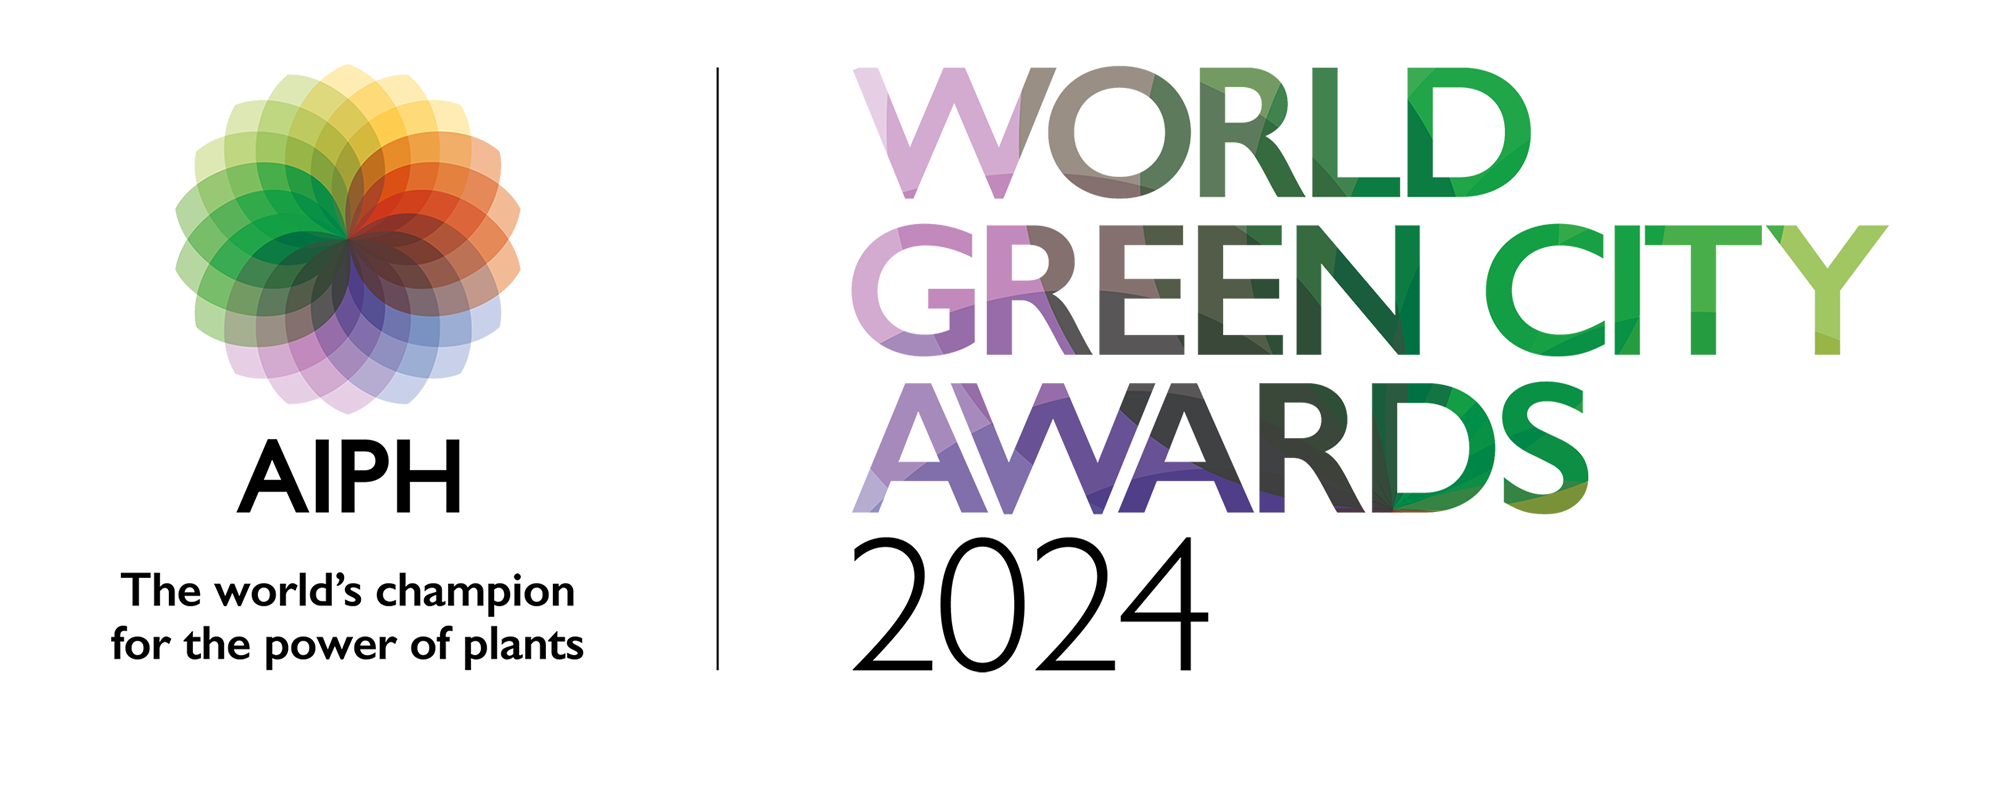 World Green City Awards 2022 Logo